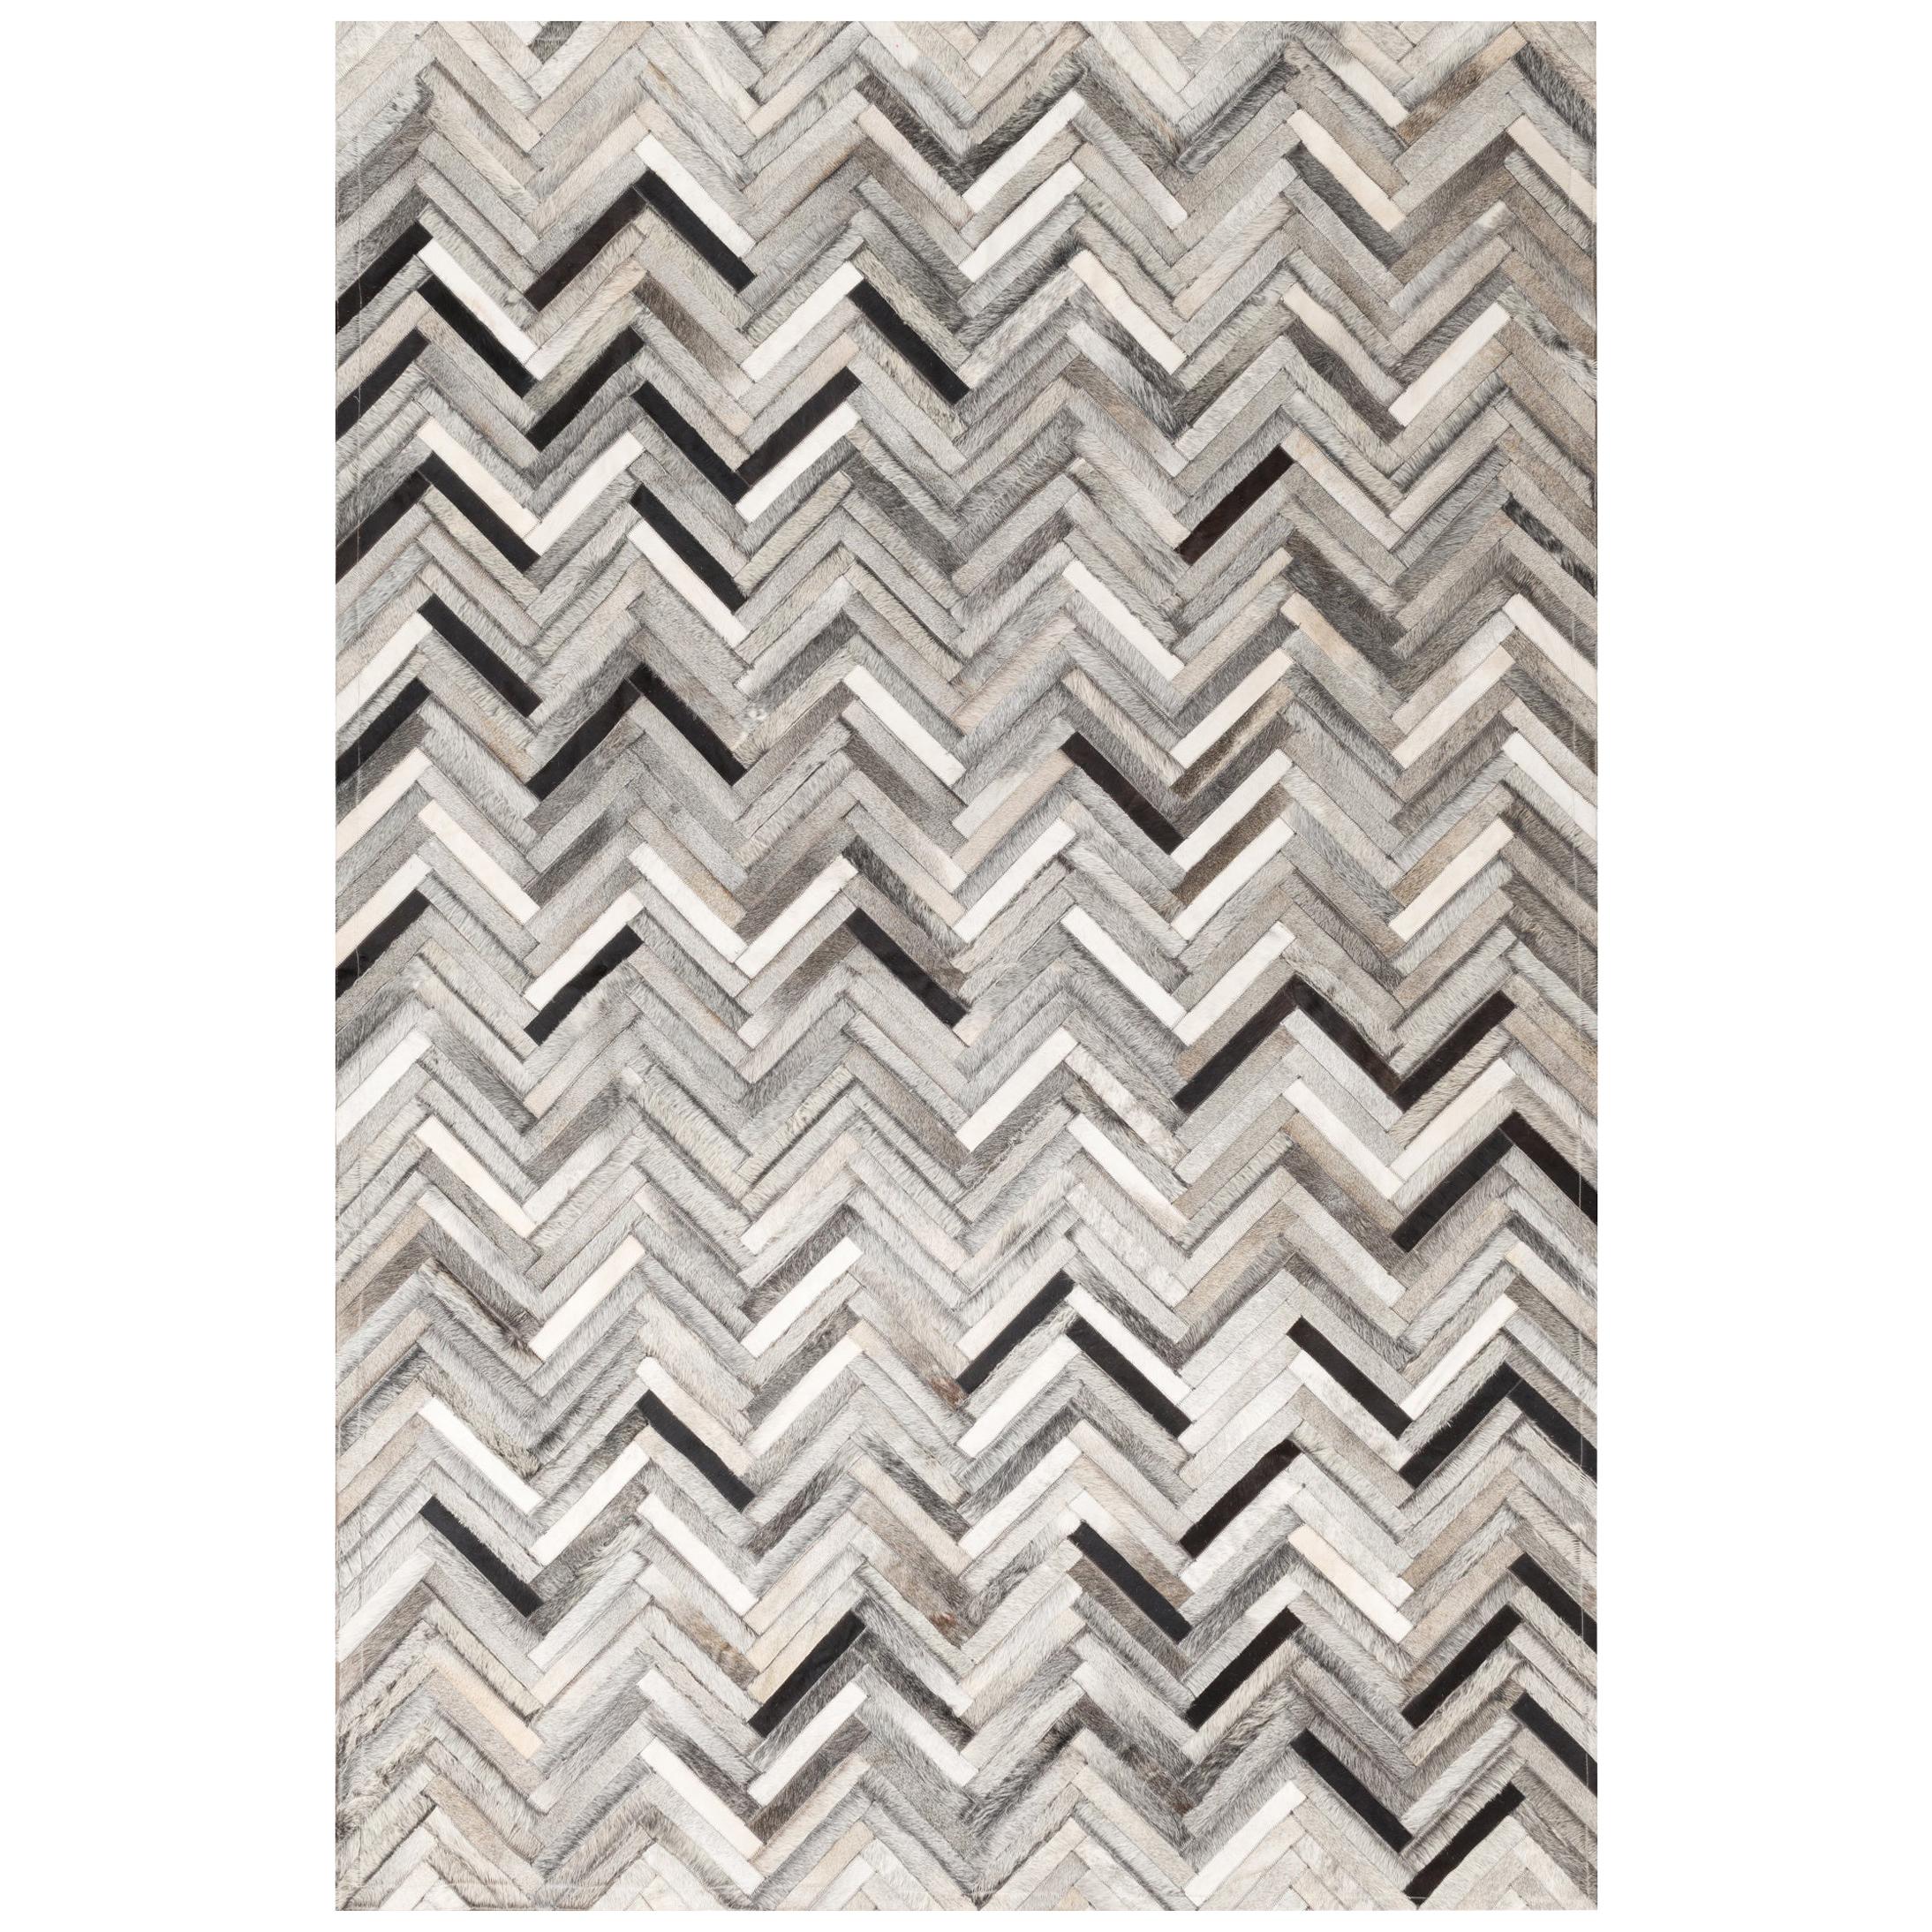 Herringbone gray, white & black Luxurious El Cielo Cowhide Area Floor Rug Small For Sale